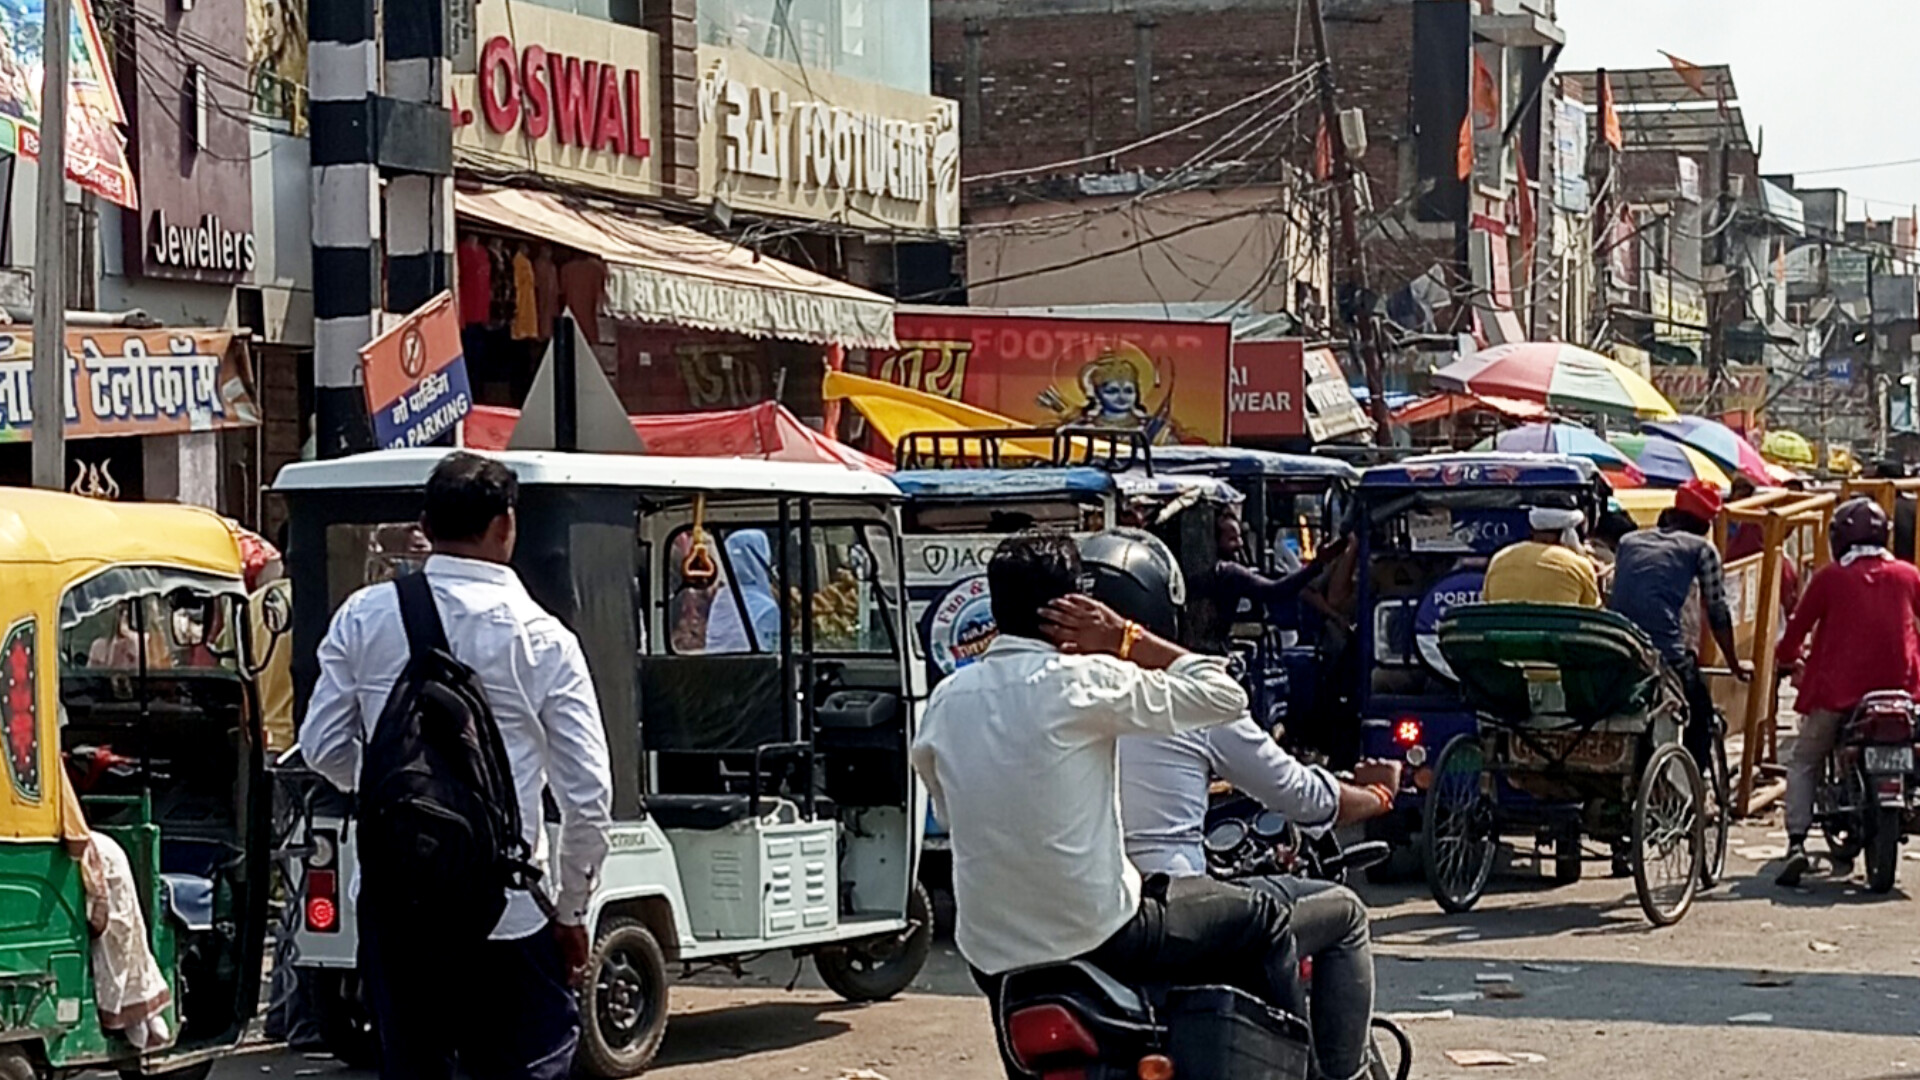 ई-रिक्शा चालकों की अराजकता के चलते कल्याणपुर बाजार का निकला दम, ट्रैफिक पुलिस हुई नतमस्तक